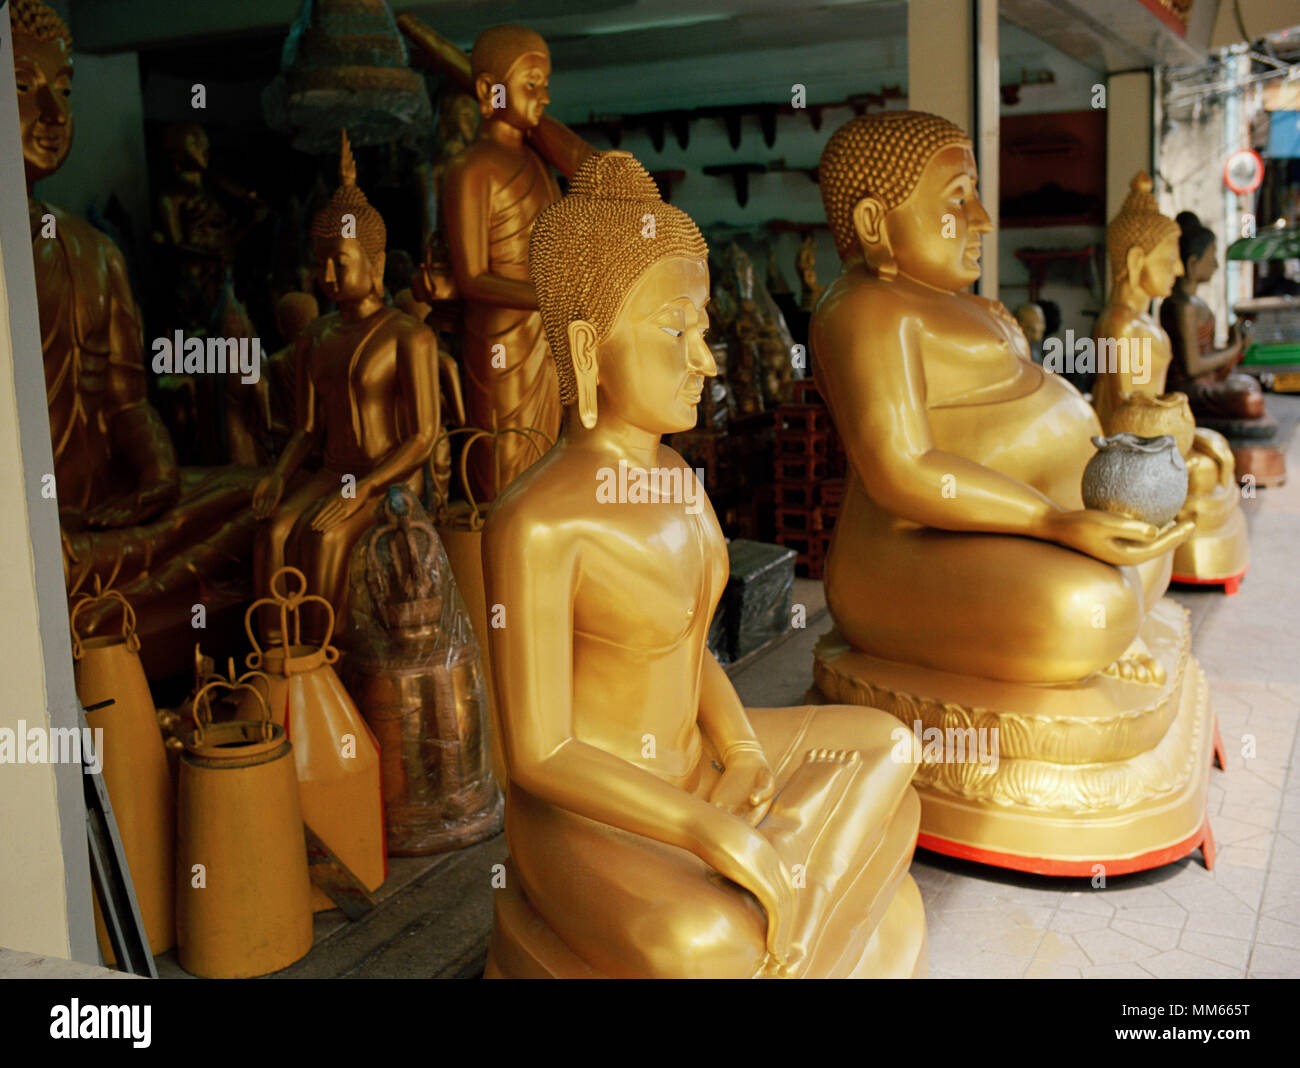 Kleine religiöse Figuren auf dem Armaturenbrett eines fahrenden Autos. Figur  eines buddhistischen Mönchs im Innenraum eines Autos, Thailand  Stockfotografie - Alamy